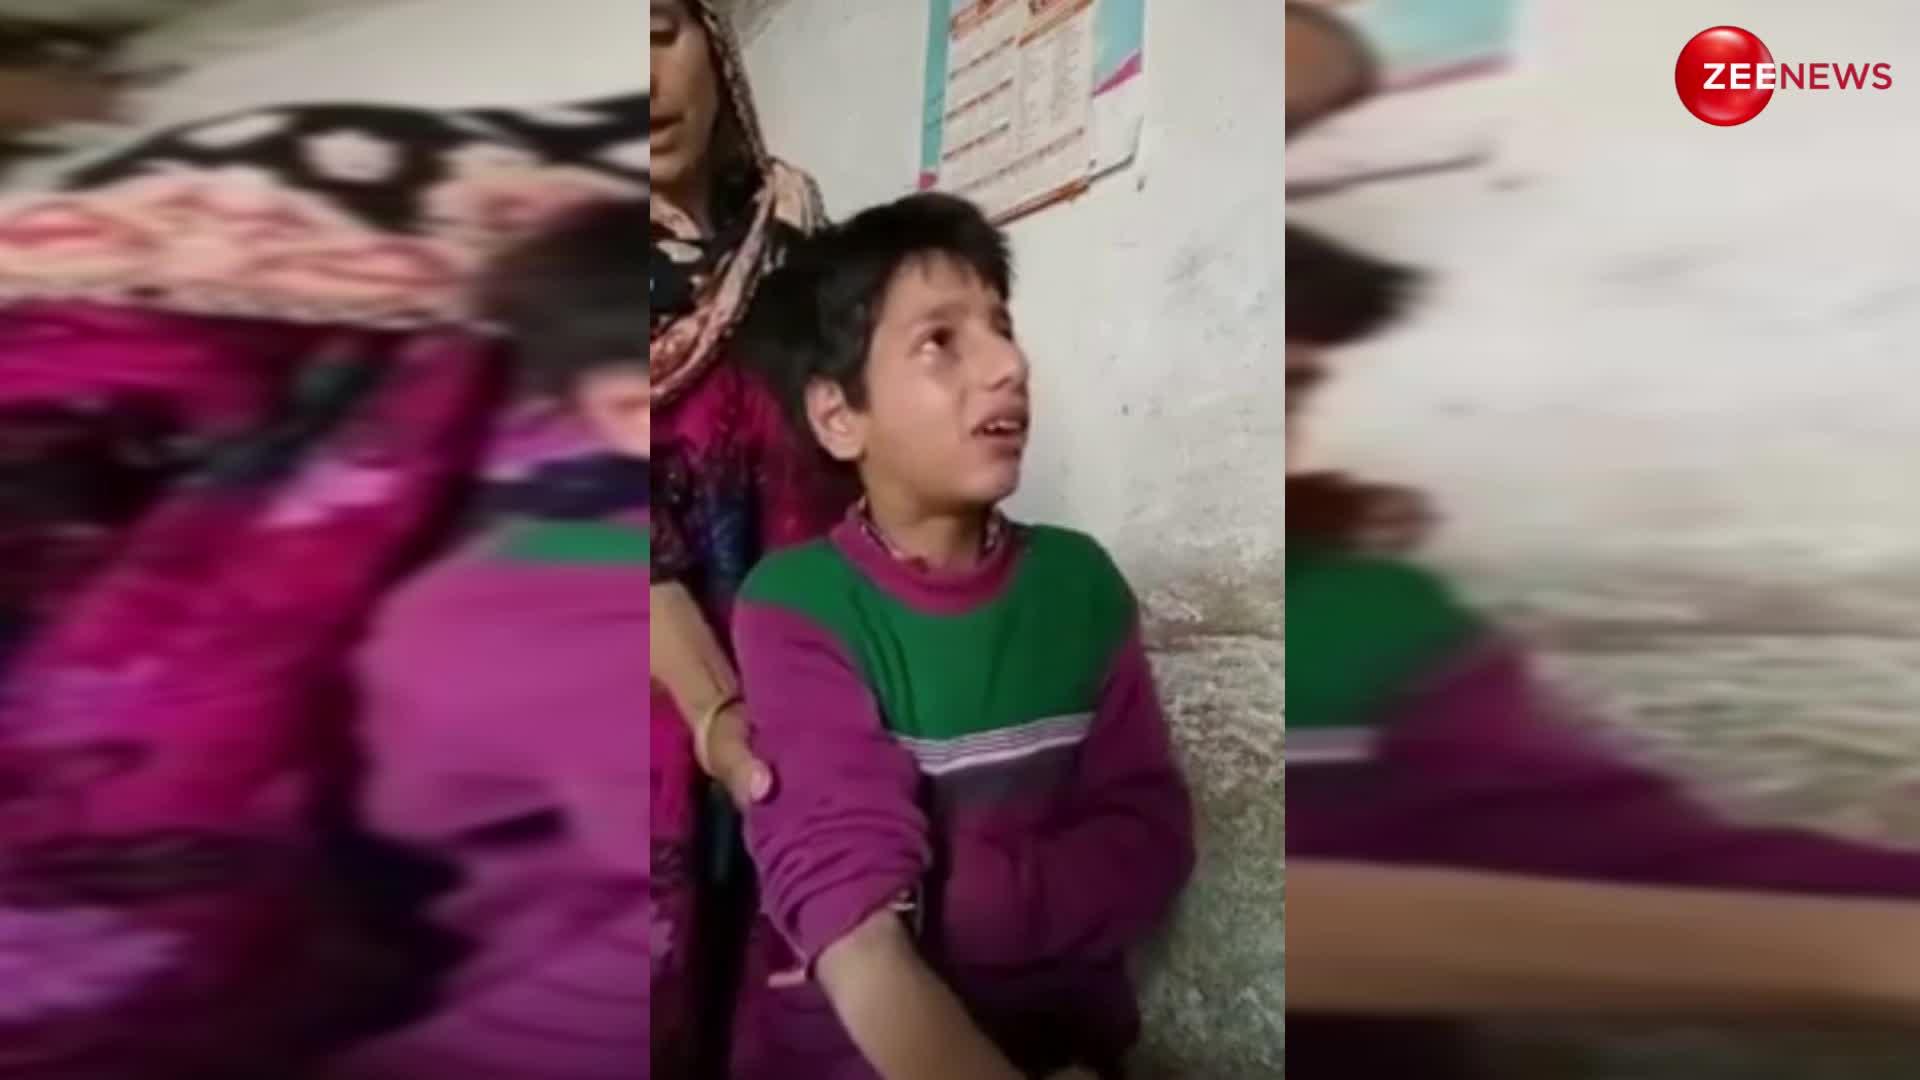 Crying boy video: पाकिस्तानी लड़के का ये वीडियो देख नहीं रुकी किसी की हंसी, इंजेक्शन लगवाते हुए किए इतने ड्रामे; देख डॉक्टर को भी आ गया गुस्सा